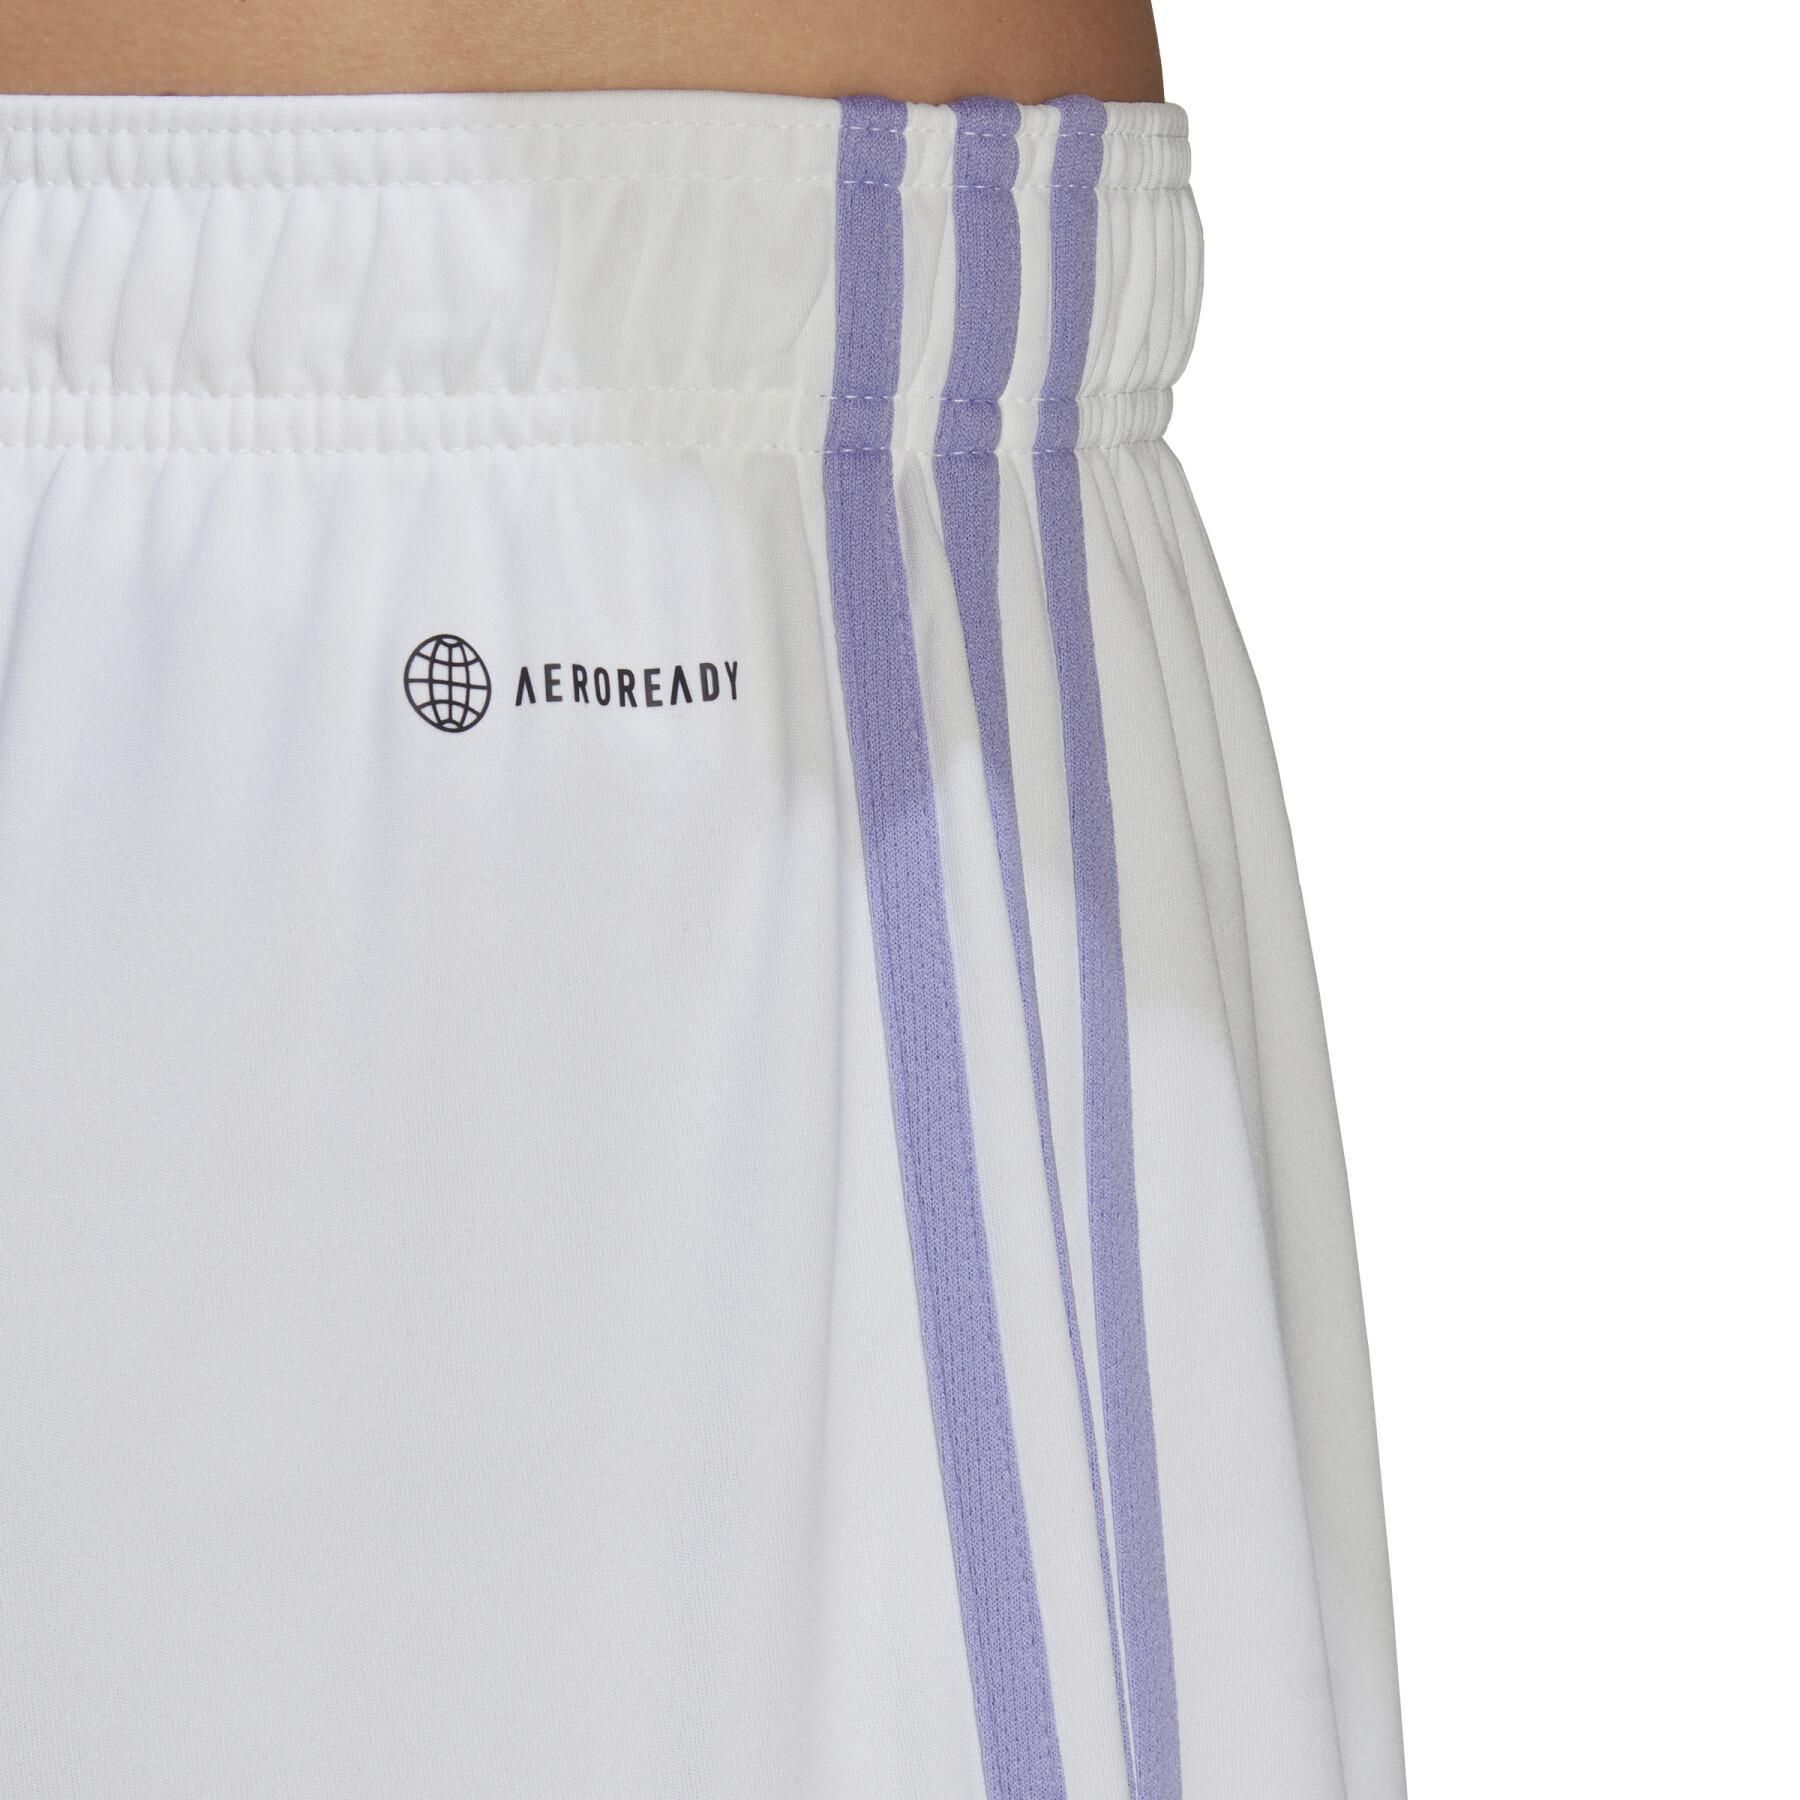 Pantalones cortos para el Primera equipación Real Madrid 2022/23